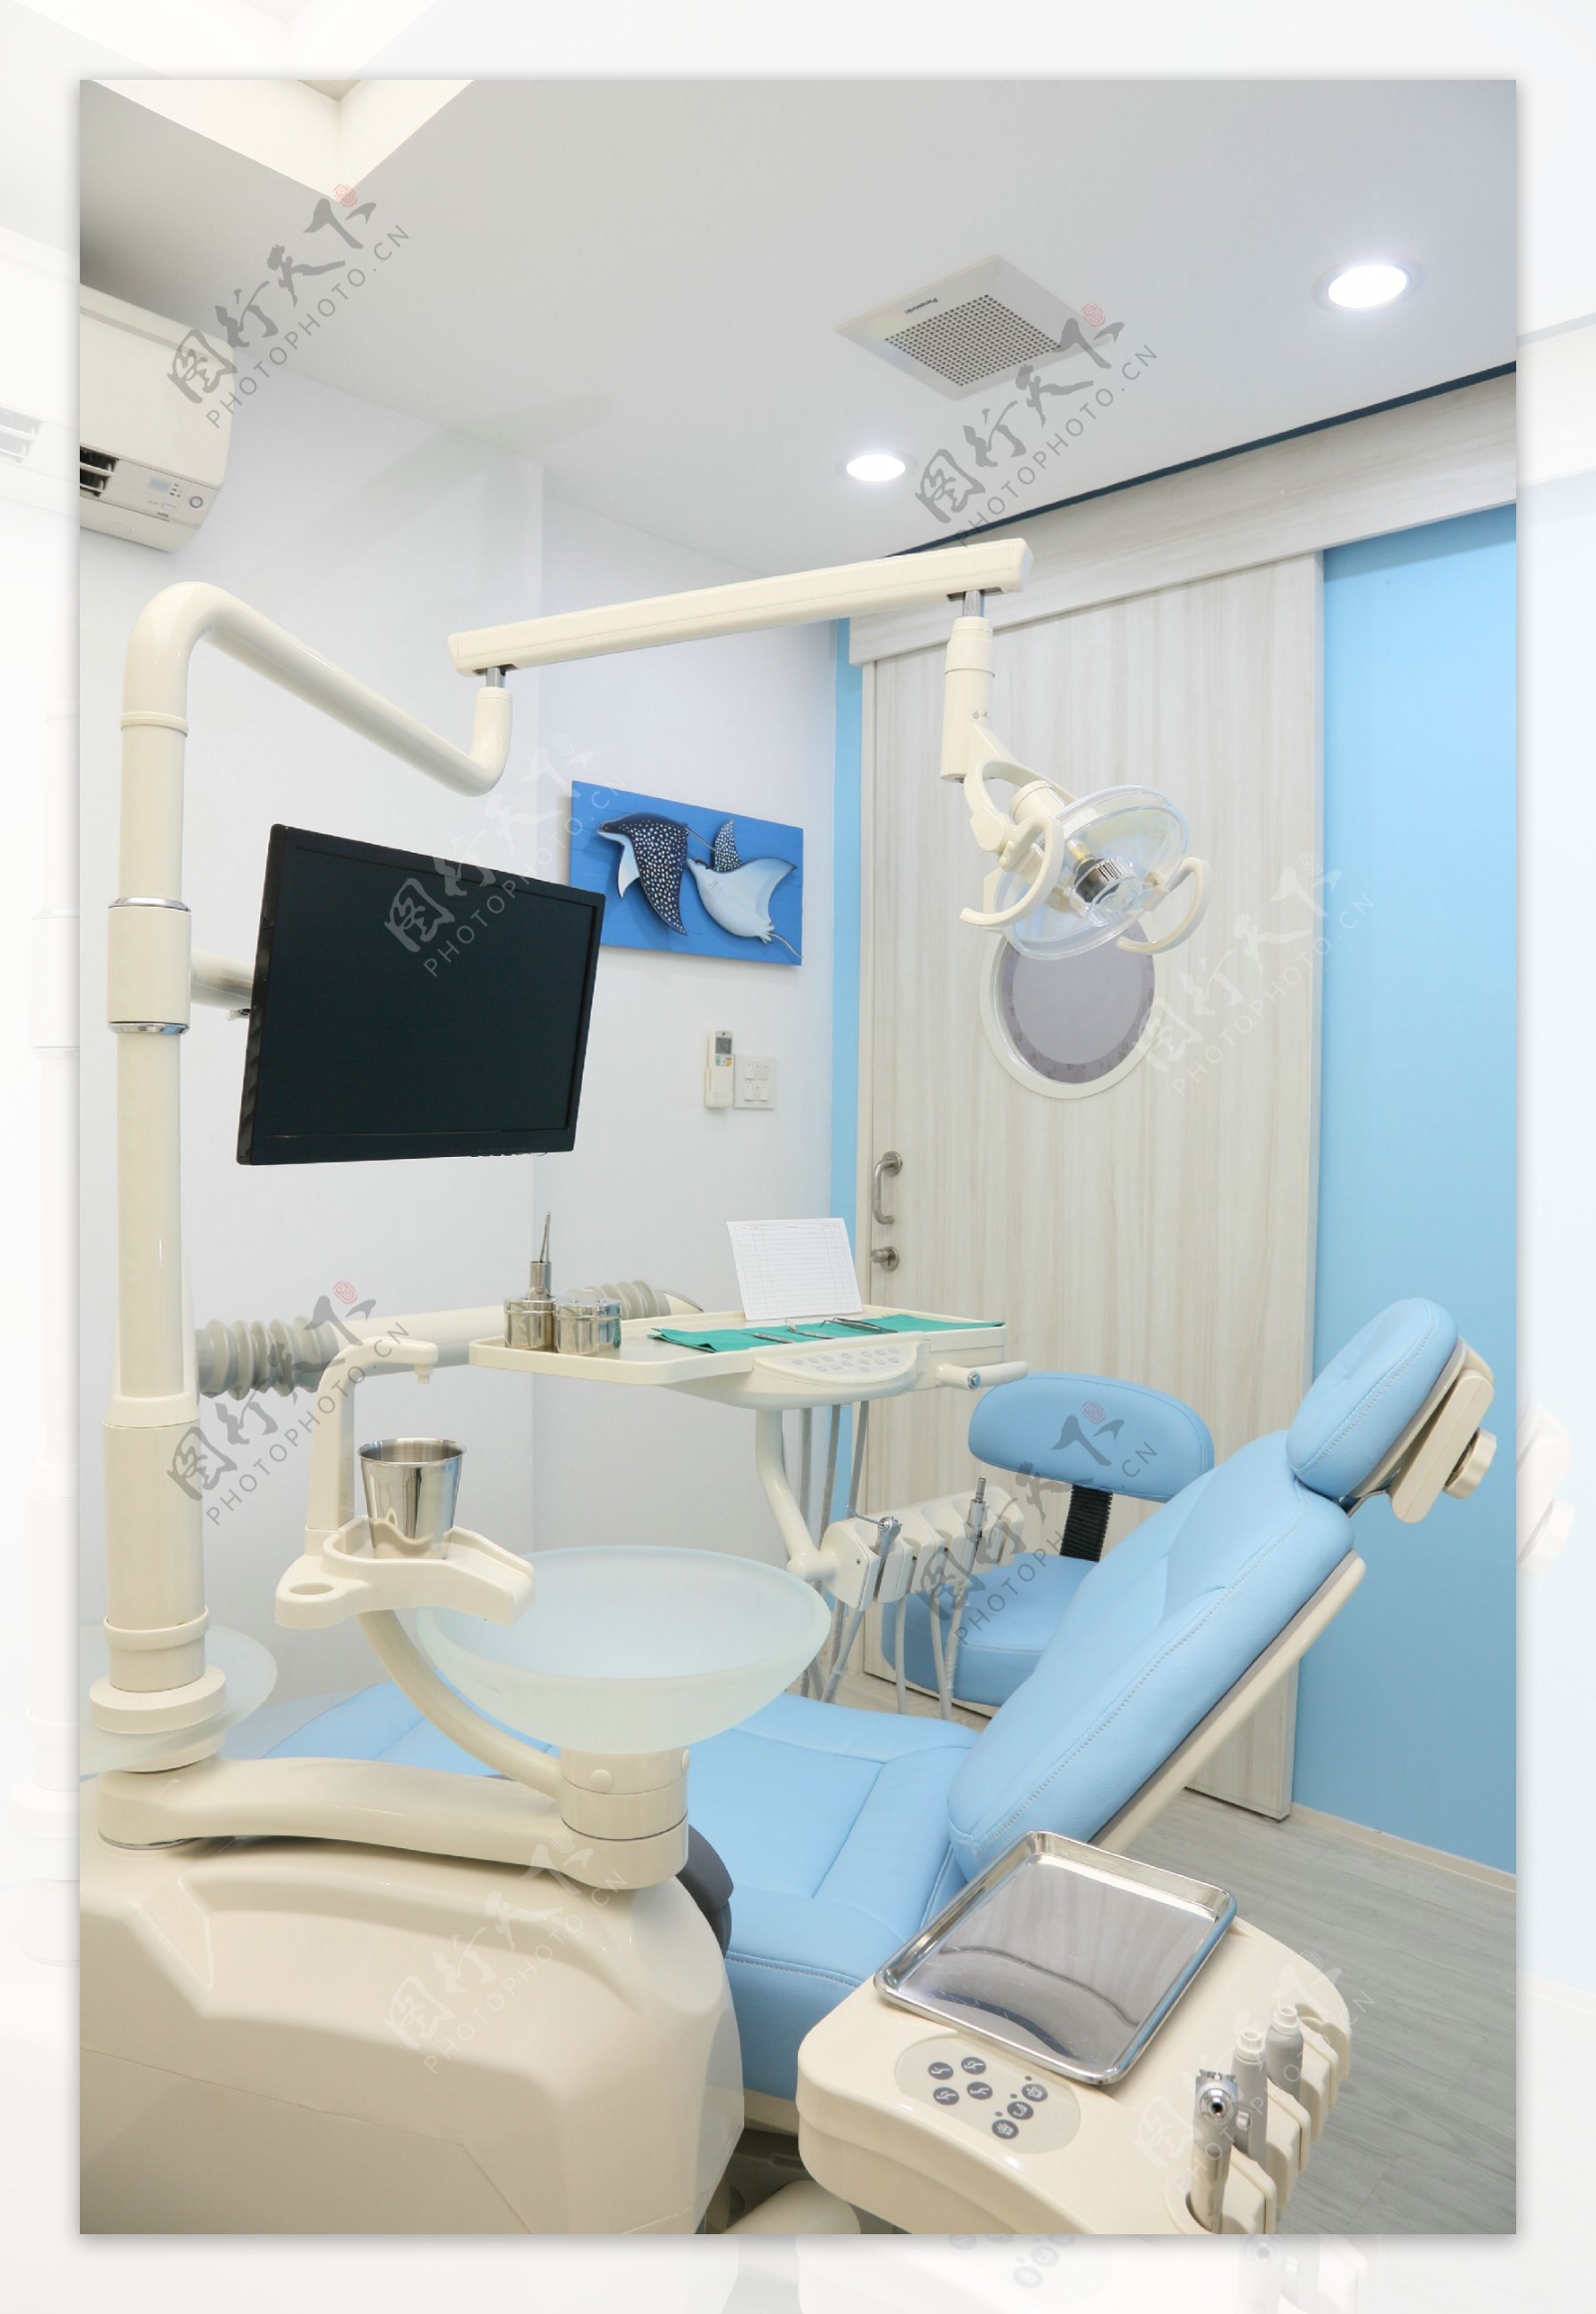 牙科医院手术沙发